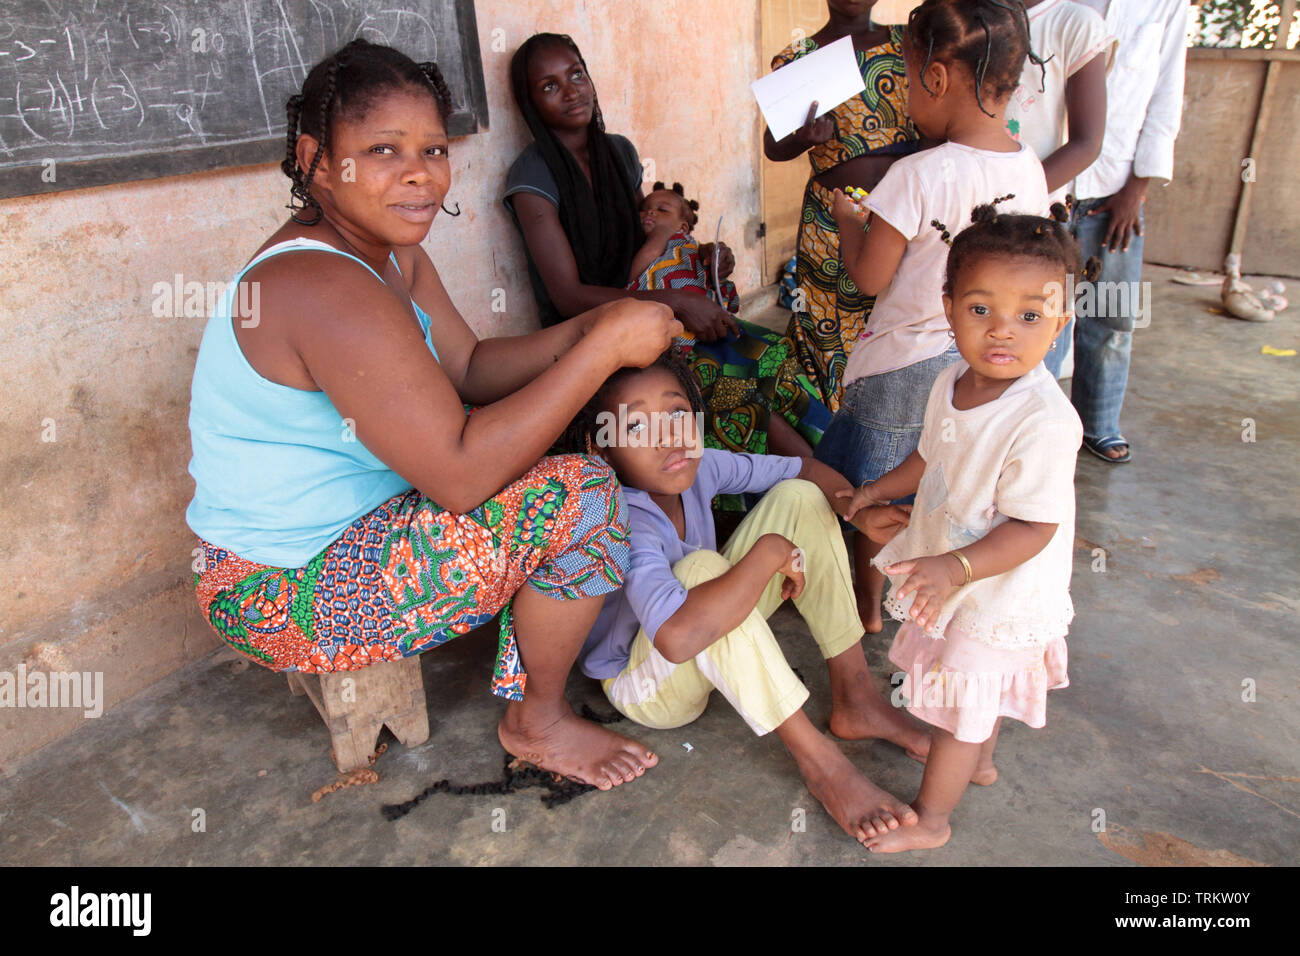 Maman togolaise posant des extensions sur les cheveux de sa fille. La convenzione di Lomé. Il Togo. Afrique de l'Ouest. Foto Stock